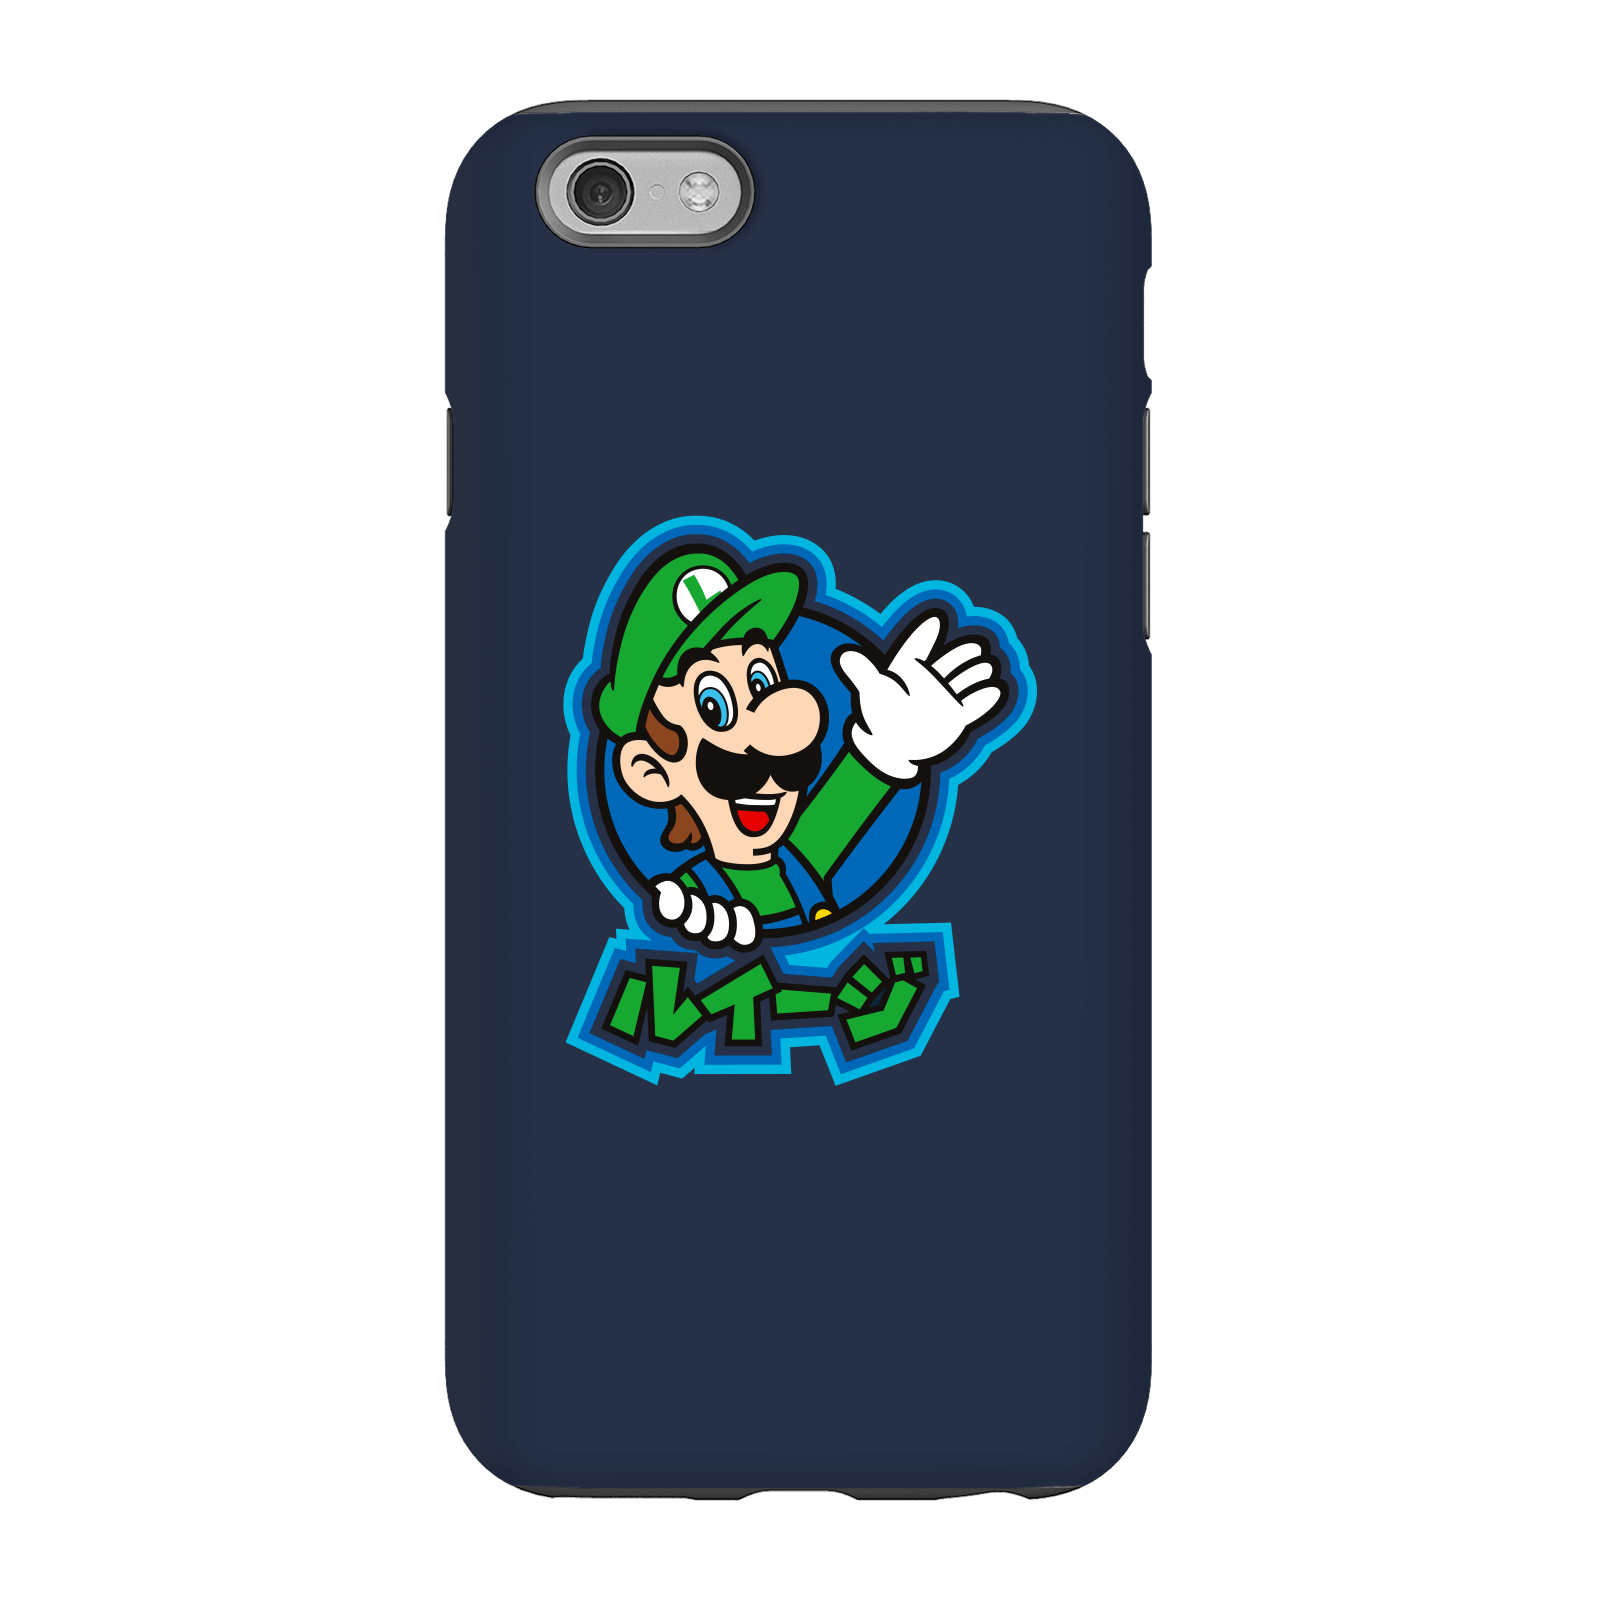 Nintendo Super Mario Luigi Kanji Phone Case - iPhone 6S - Tough Case - Gloss